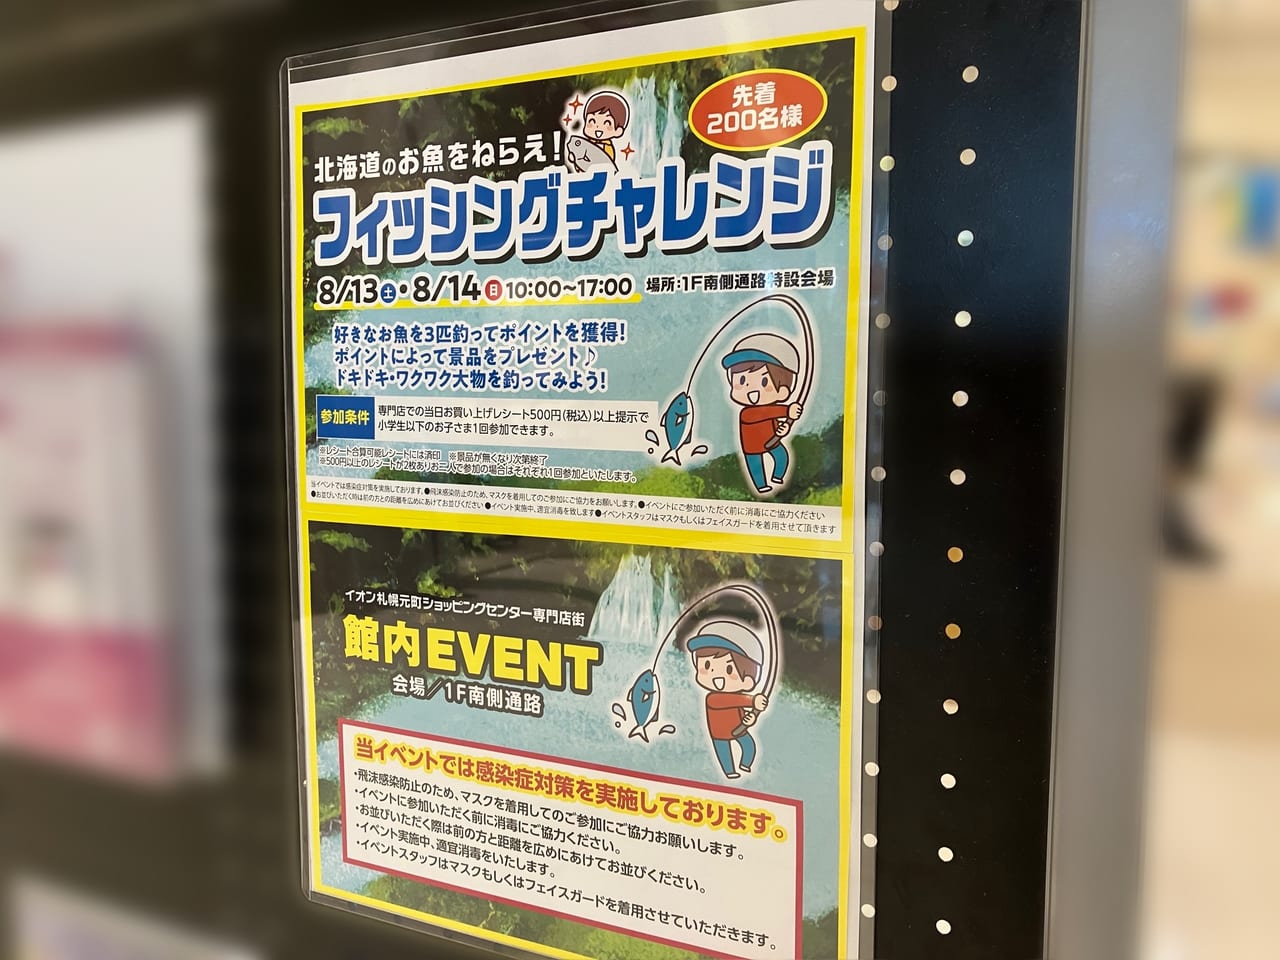 「イオン札幌元町店」でフィッシングチャレンジのイベントが開かれるようですよ！